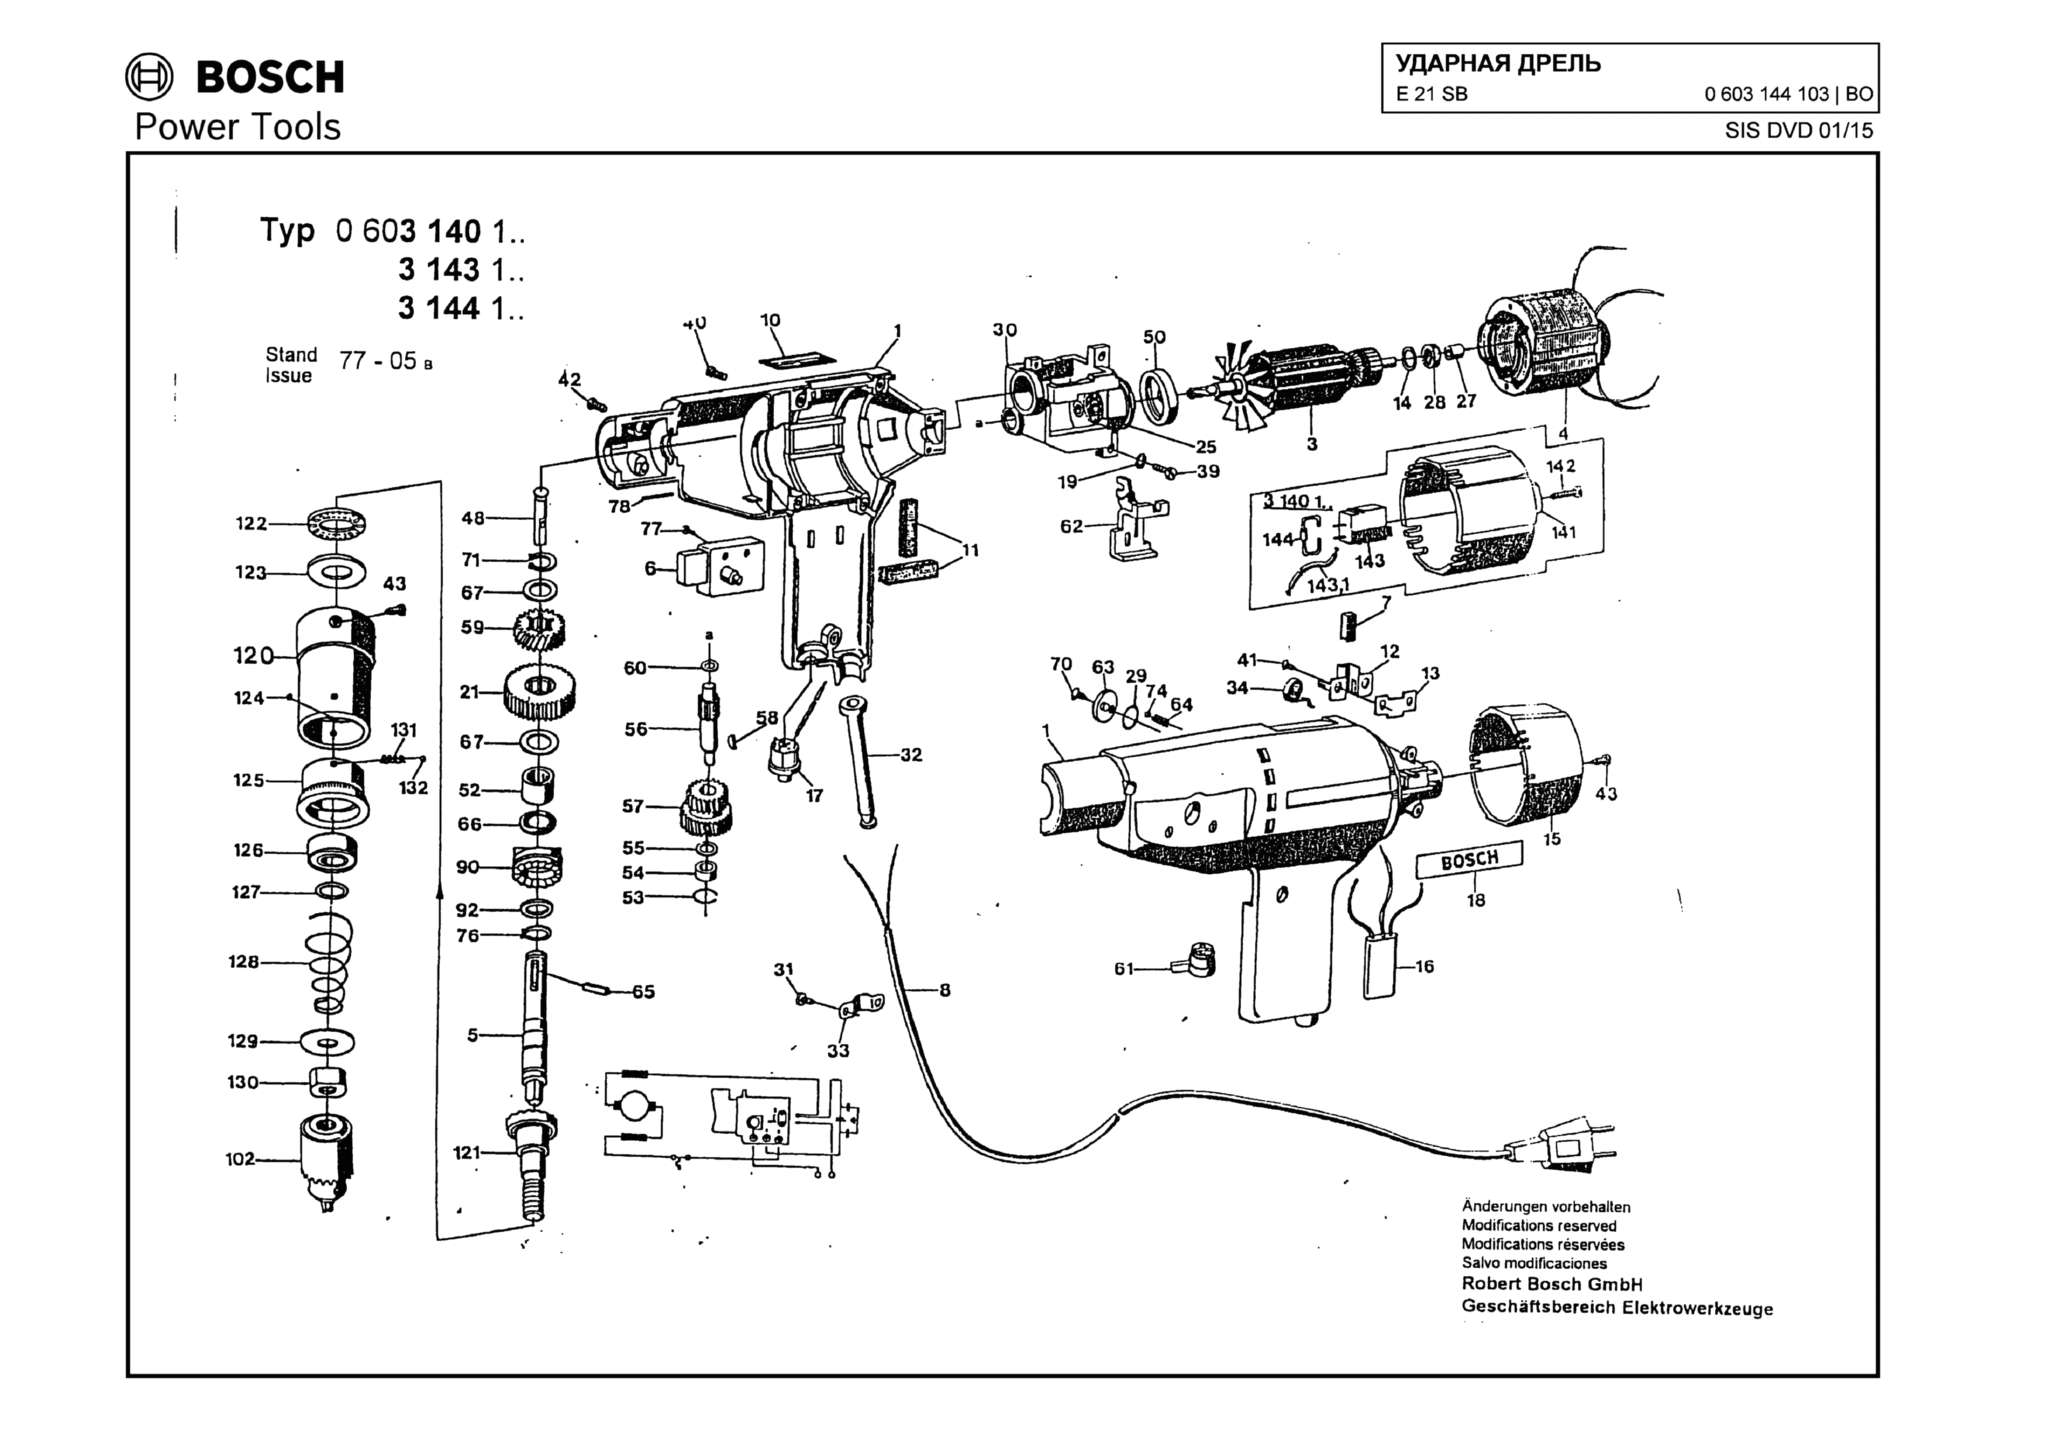 Запчасти, схема и деталировка Bosch E 21 SB (ТИП 0603144103)